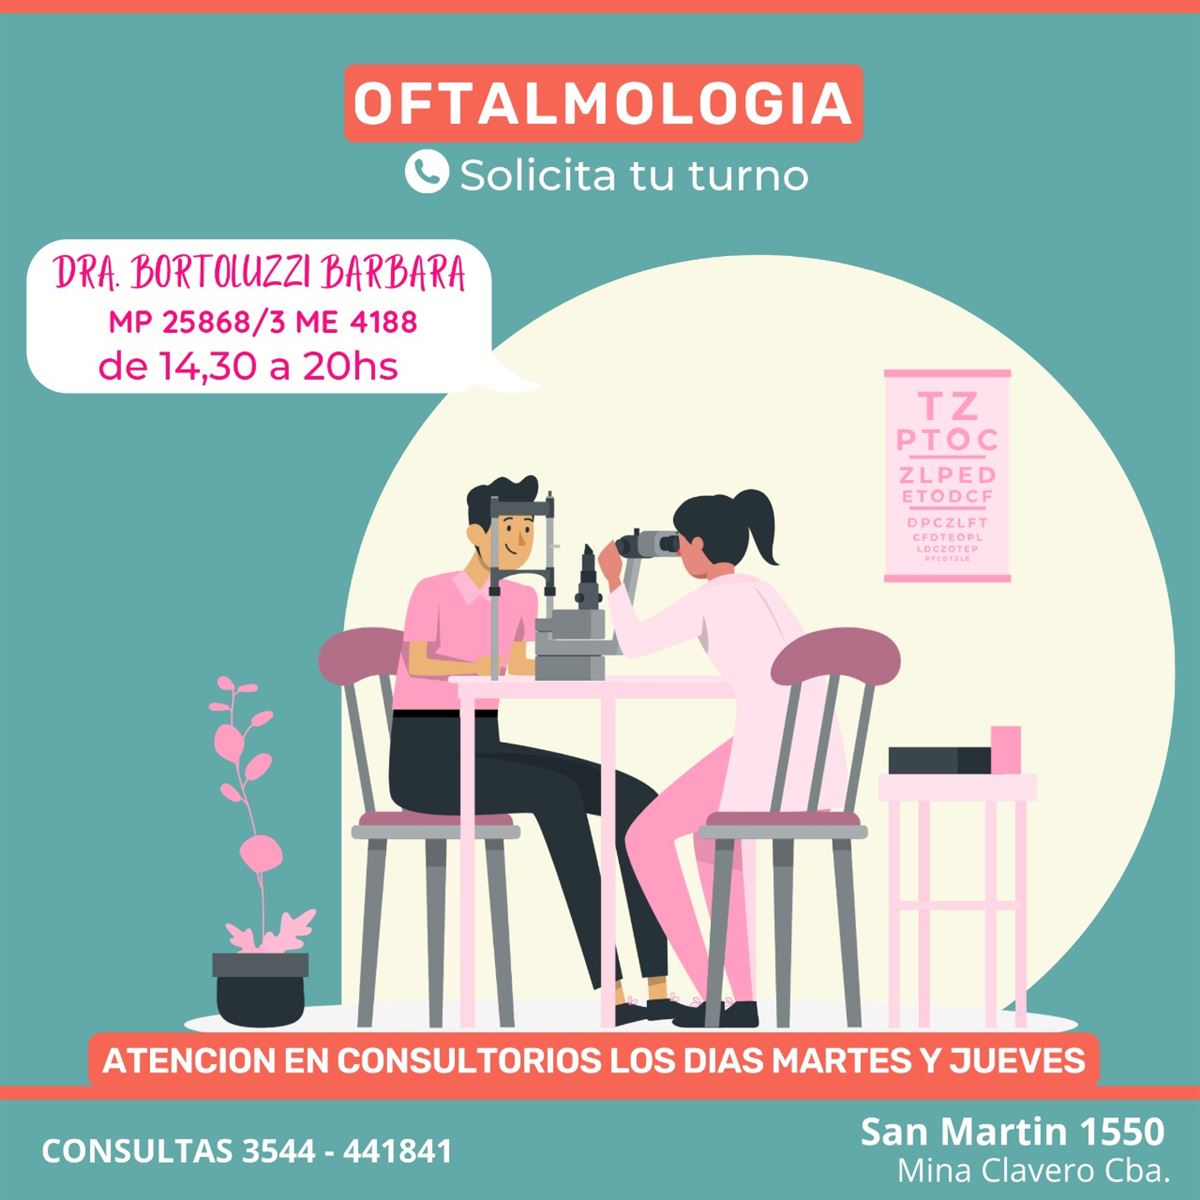 Oftalmología - InfoGuia Traslasierra - Oftalmología